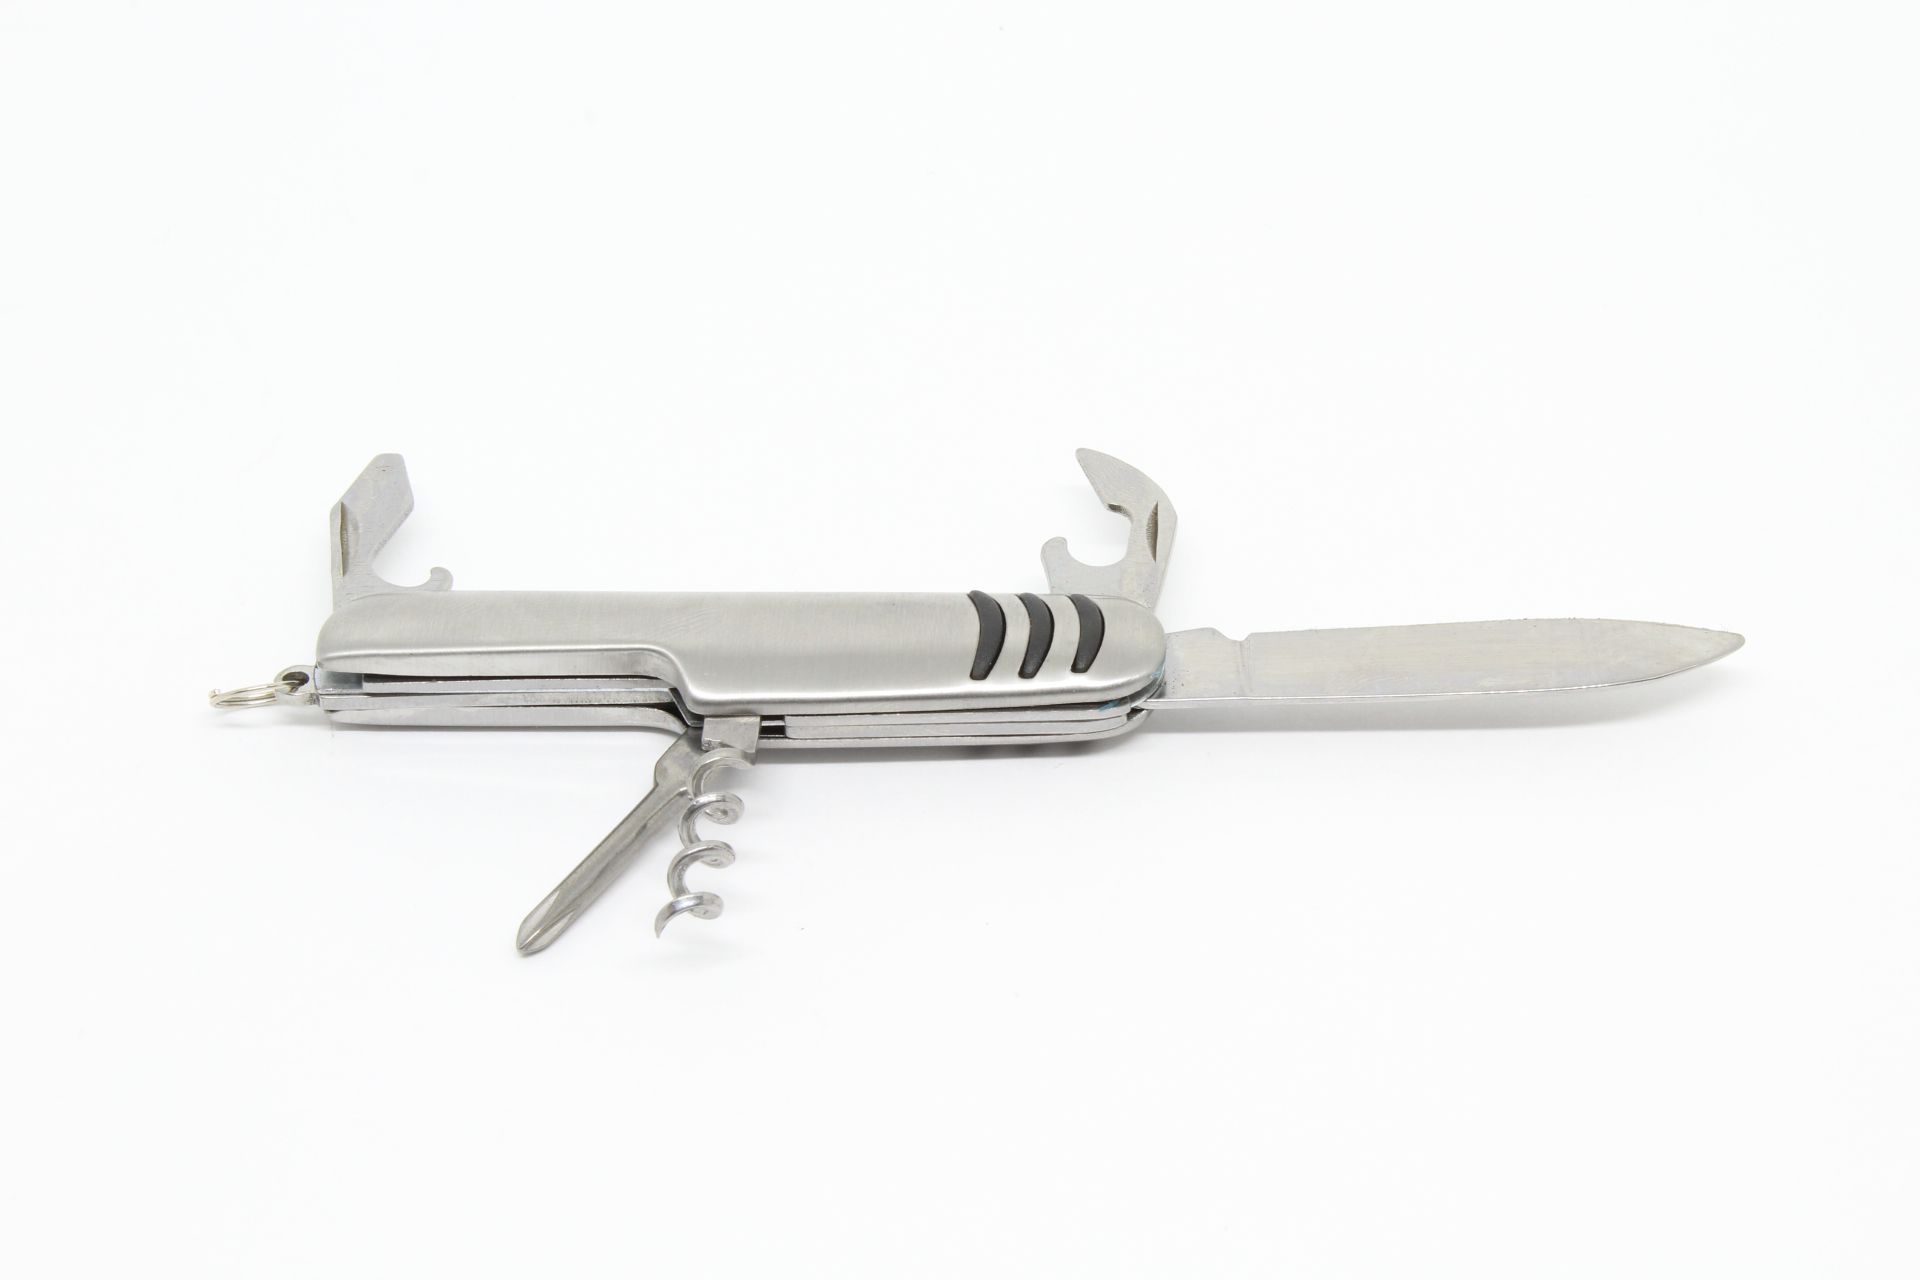 Canivete Inox XV3057 Multifuncional 5 Funções Tipo Suíço - Life Pesca - Sua loja de Pesca, Camping e Lazer